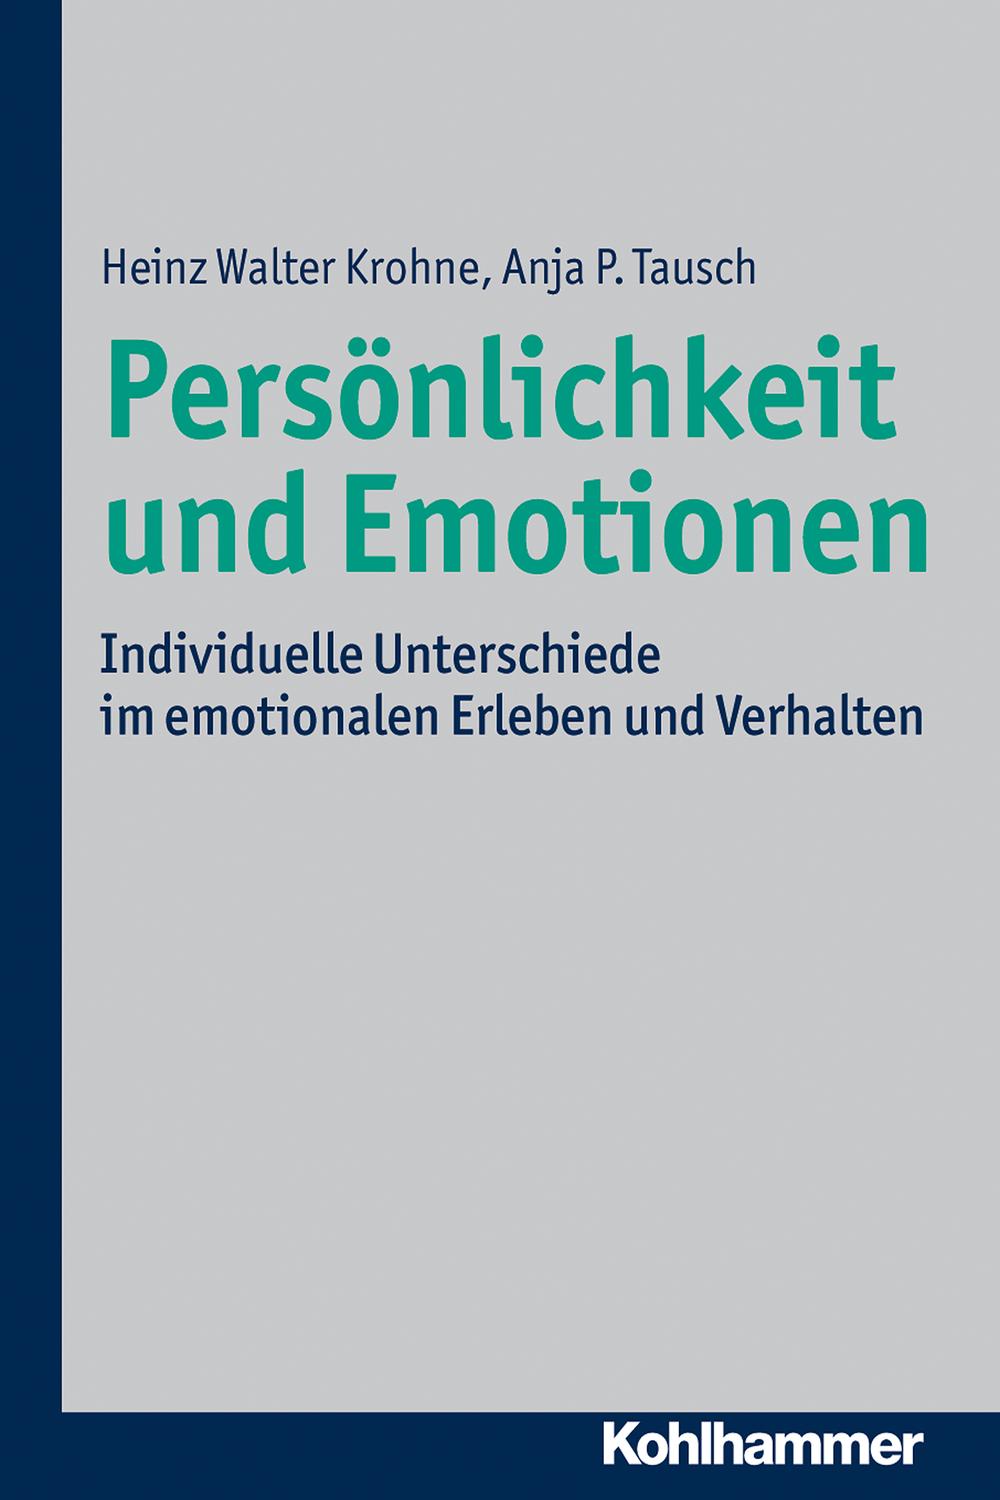 Persönlichkeit und Emotionen - Heinz Walter Krohne, Anja P. Tausch